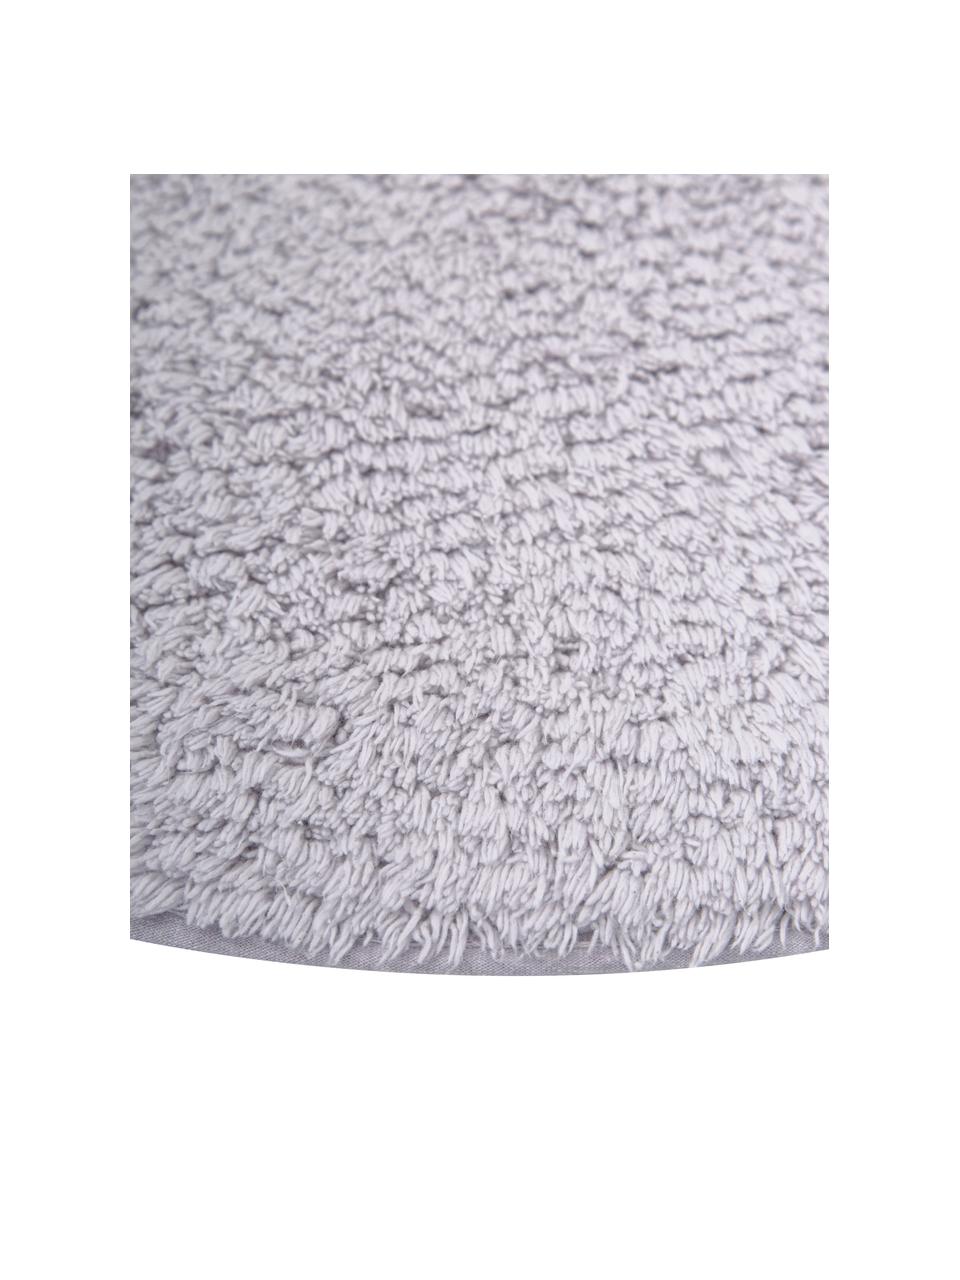 Alfombrilla de baño de algodón ecológico Ingela, 100% algodón con certificado BCI, Violeta, Ø 65 cm